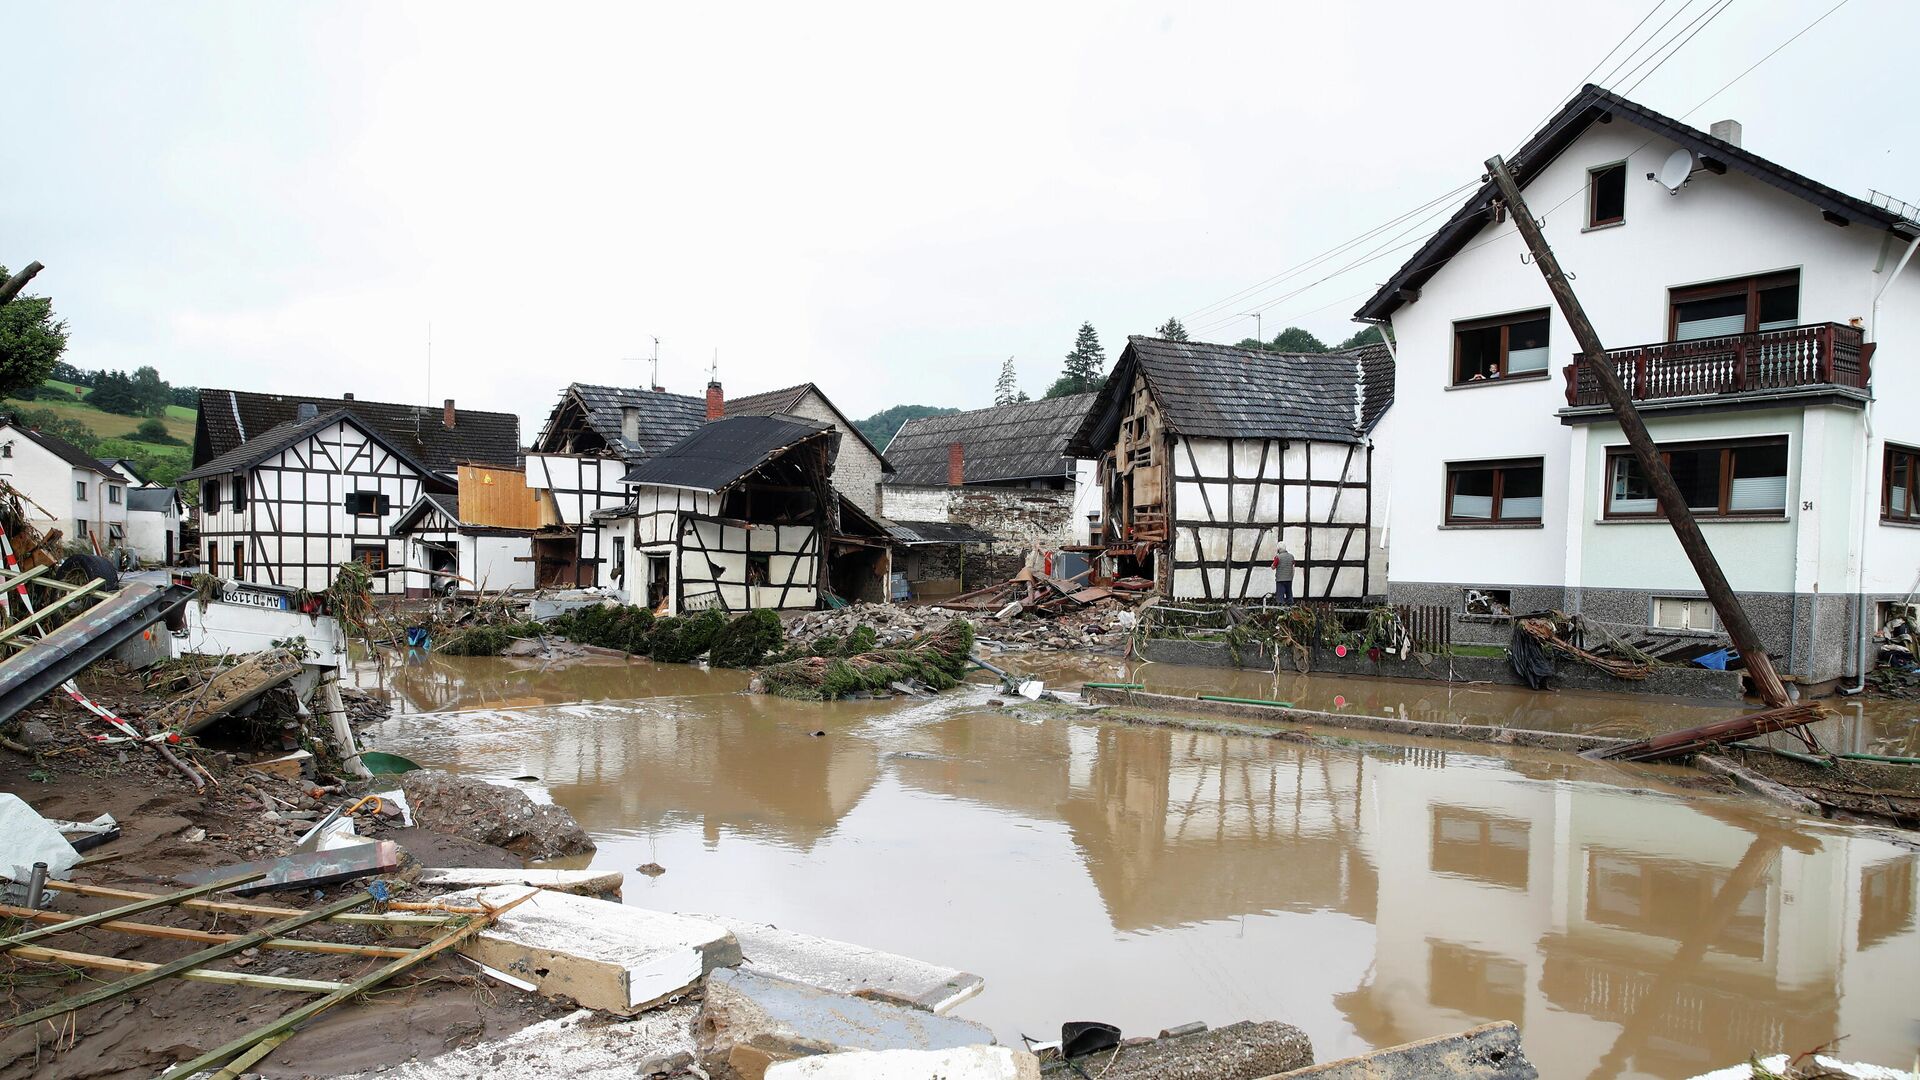 Общий вид зоны, пострадавшей от наводнения после проливных дождей в Шульде, Германия - РИА Новости, 1920, 17.07.2021